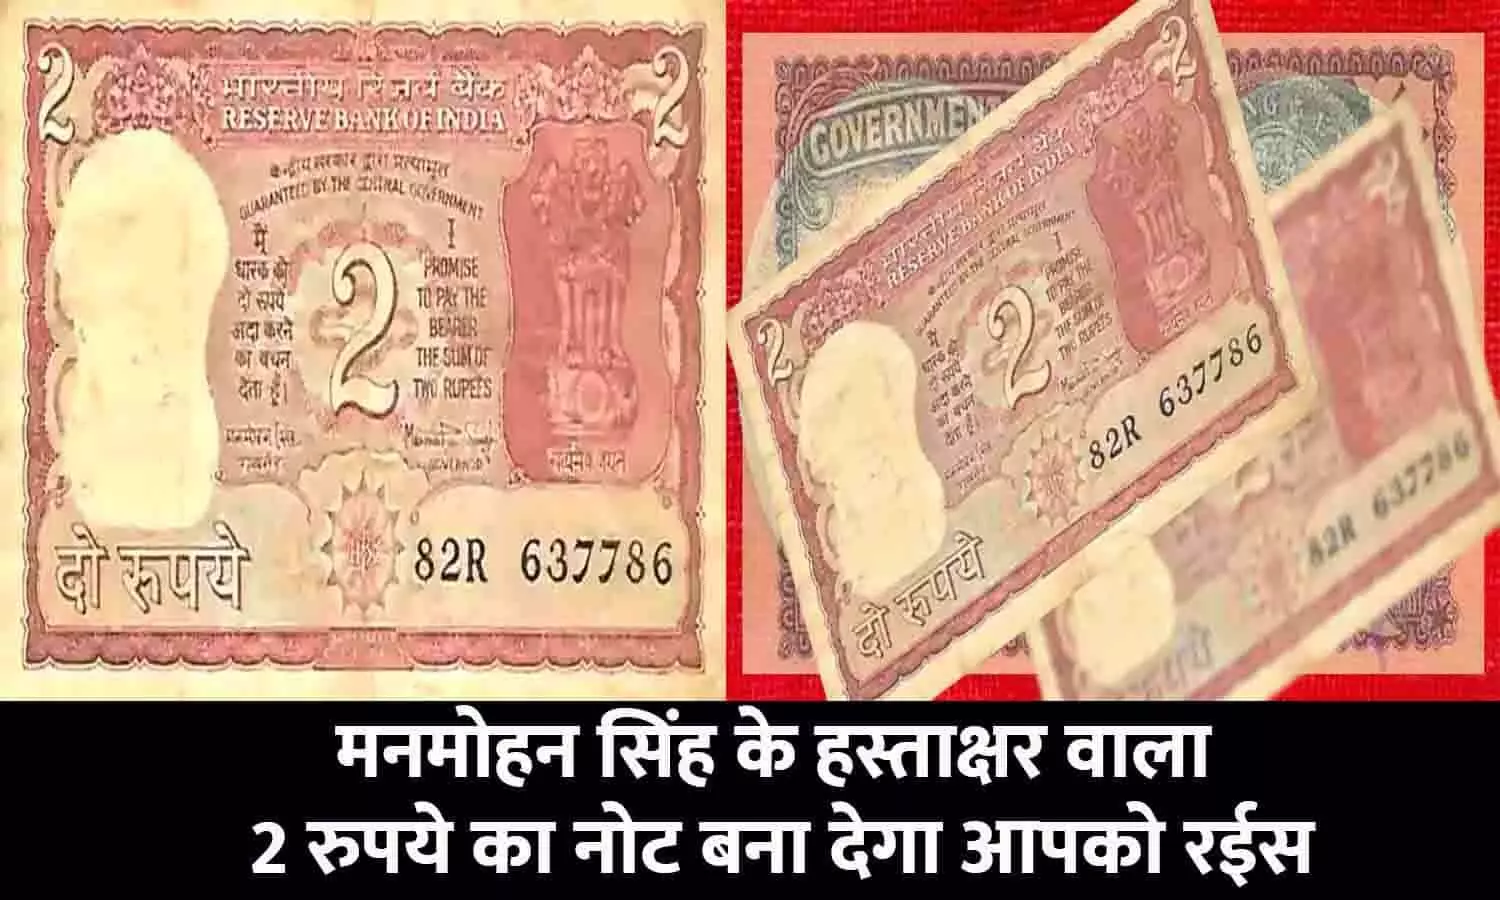 Sell Old Coin 2023: मनमोहन सिंह के हस्ताक्षर वाला 2 रुपये का नोट बना देगा आपको रईस! Online Website और Whatsapp के जरिए करे सेल, आखिरी मौका हाँथ से न जाने दे...